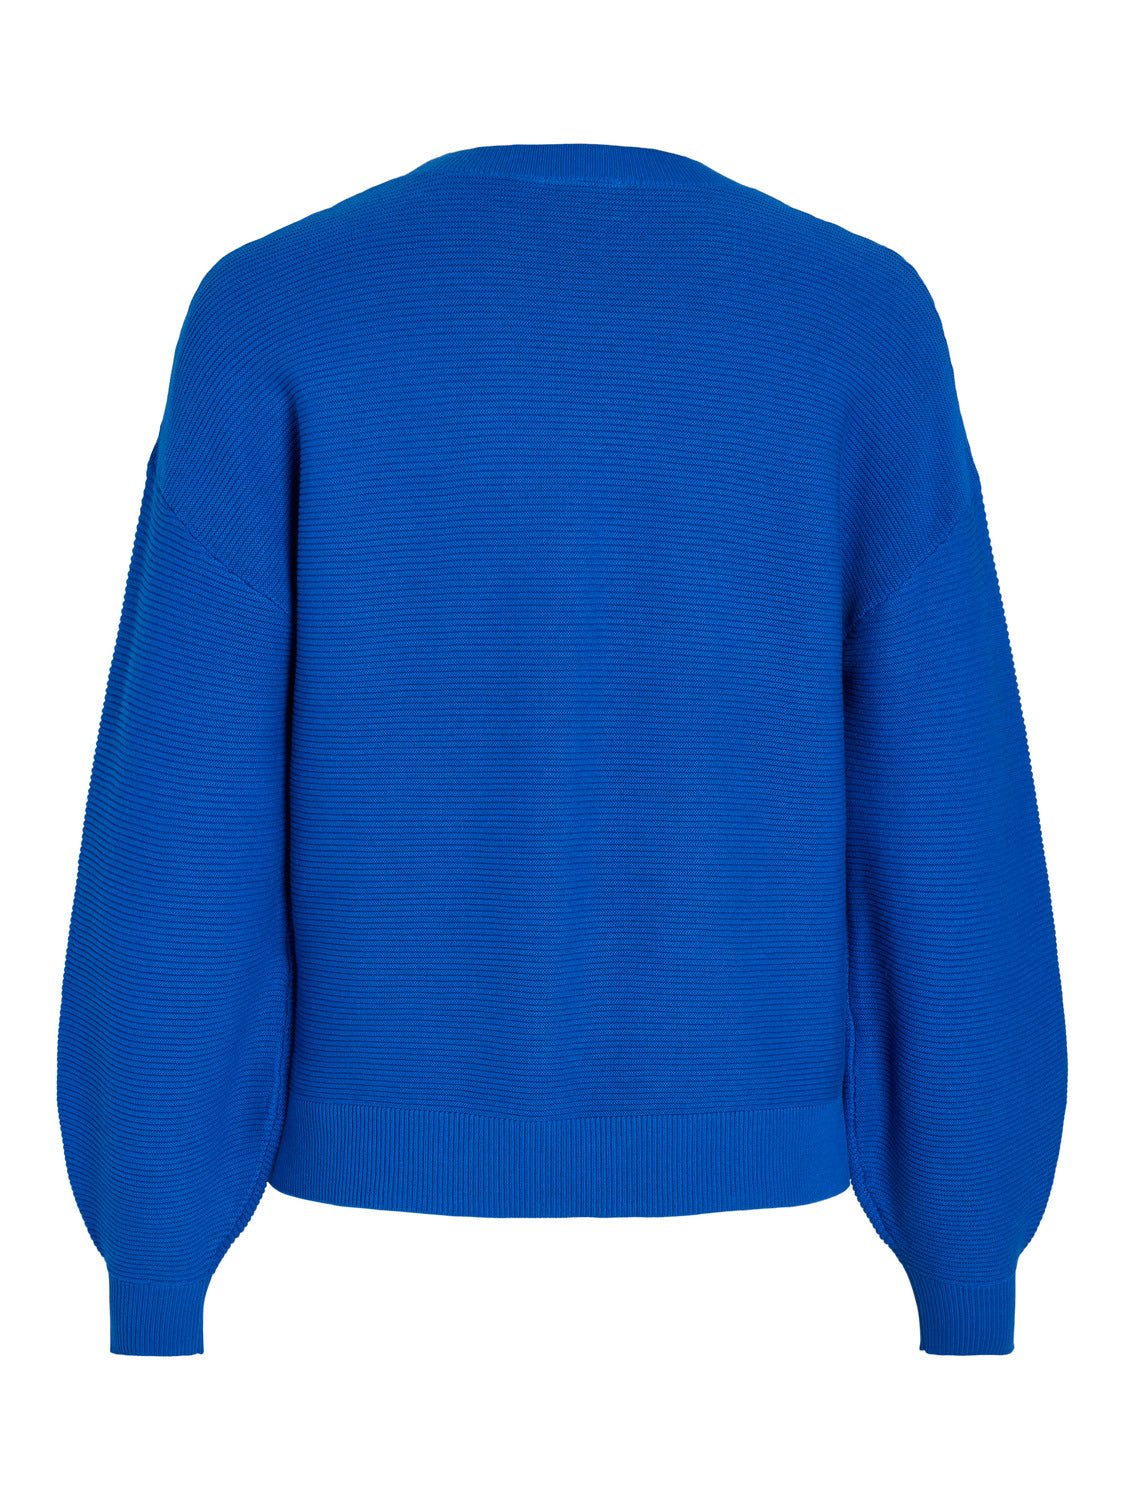 VISTACY Pullover - Lapis Blue